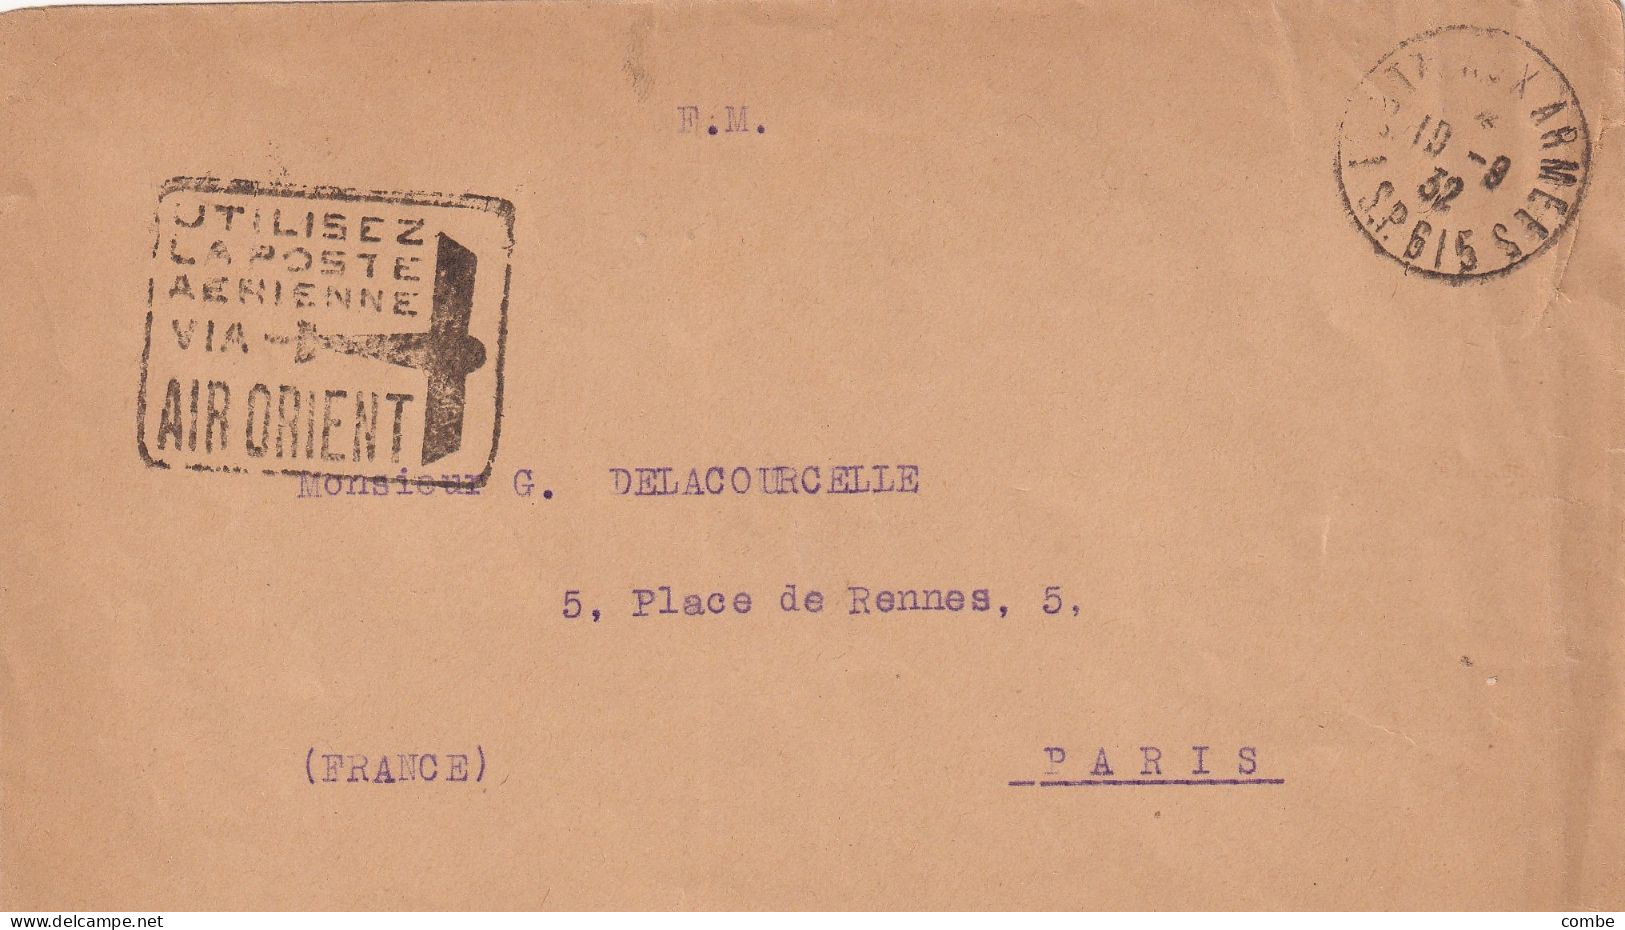 LETTRE. 19 8 1932. FM. SP 615. ALEP. SYRIE. UTILISEZ LA POSTE AERIENNE VIA AIR ORIENT. POUR PARIS - Lettres & Documents